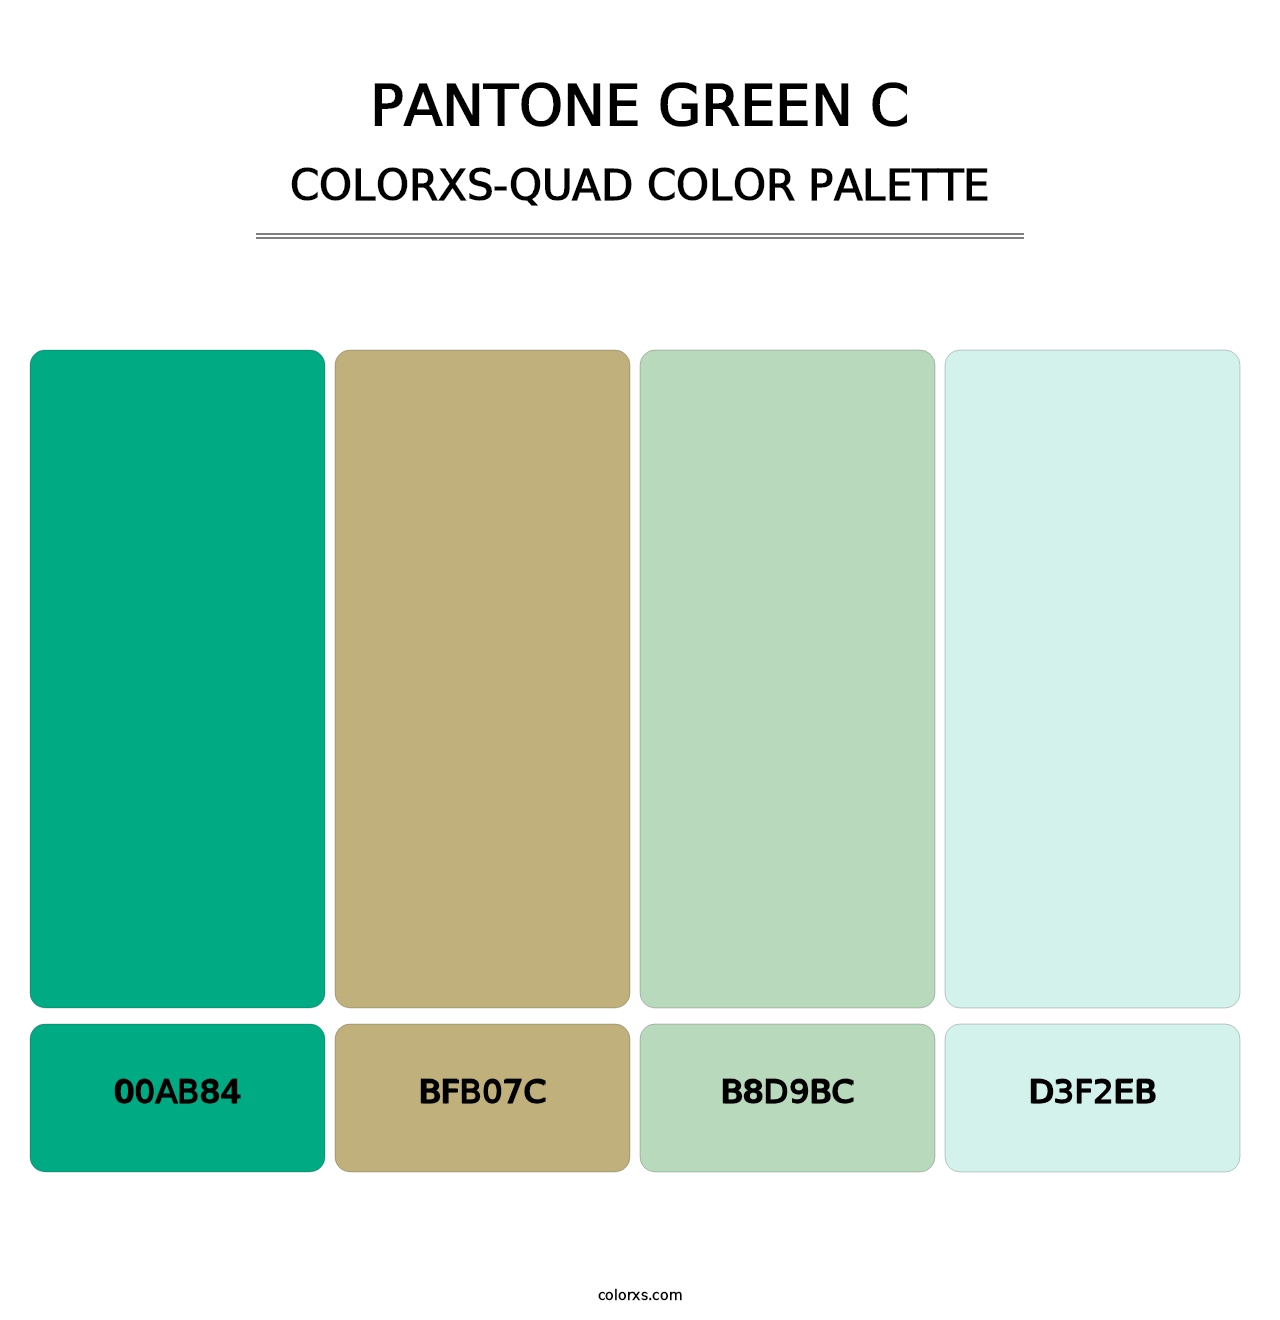 PANTONE Green C - Colorxs Quad Palette